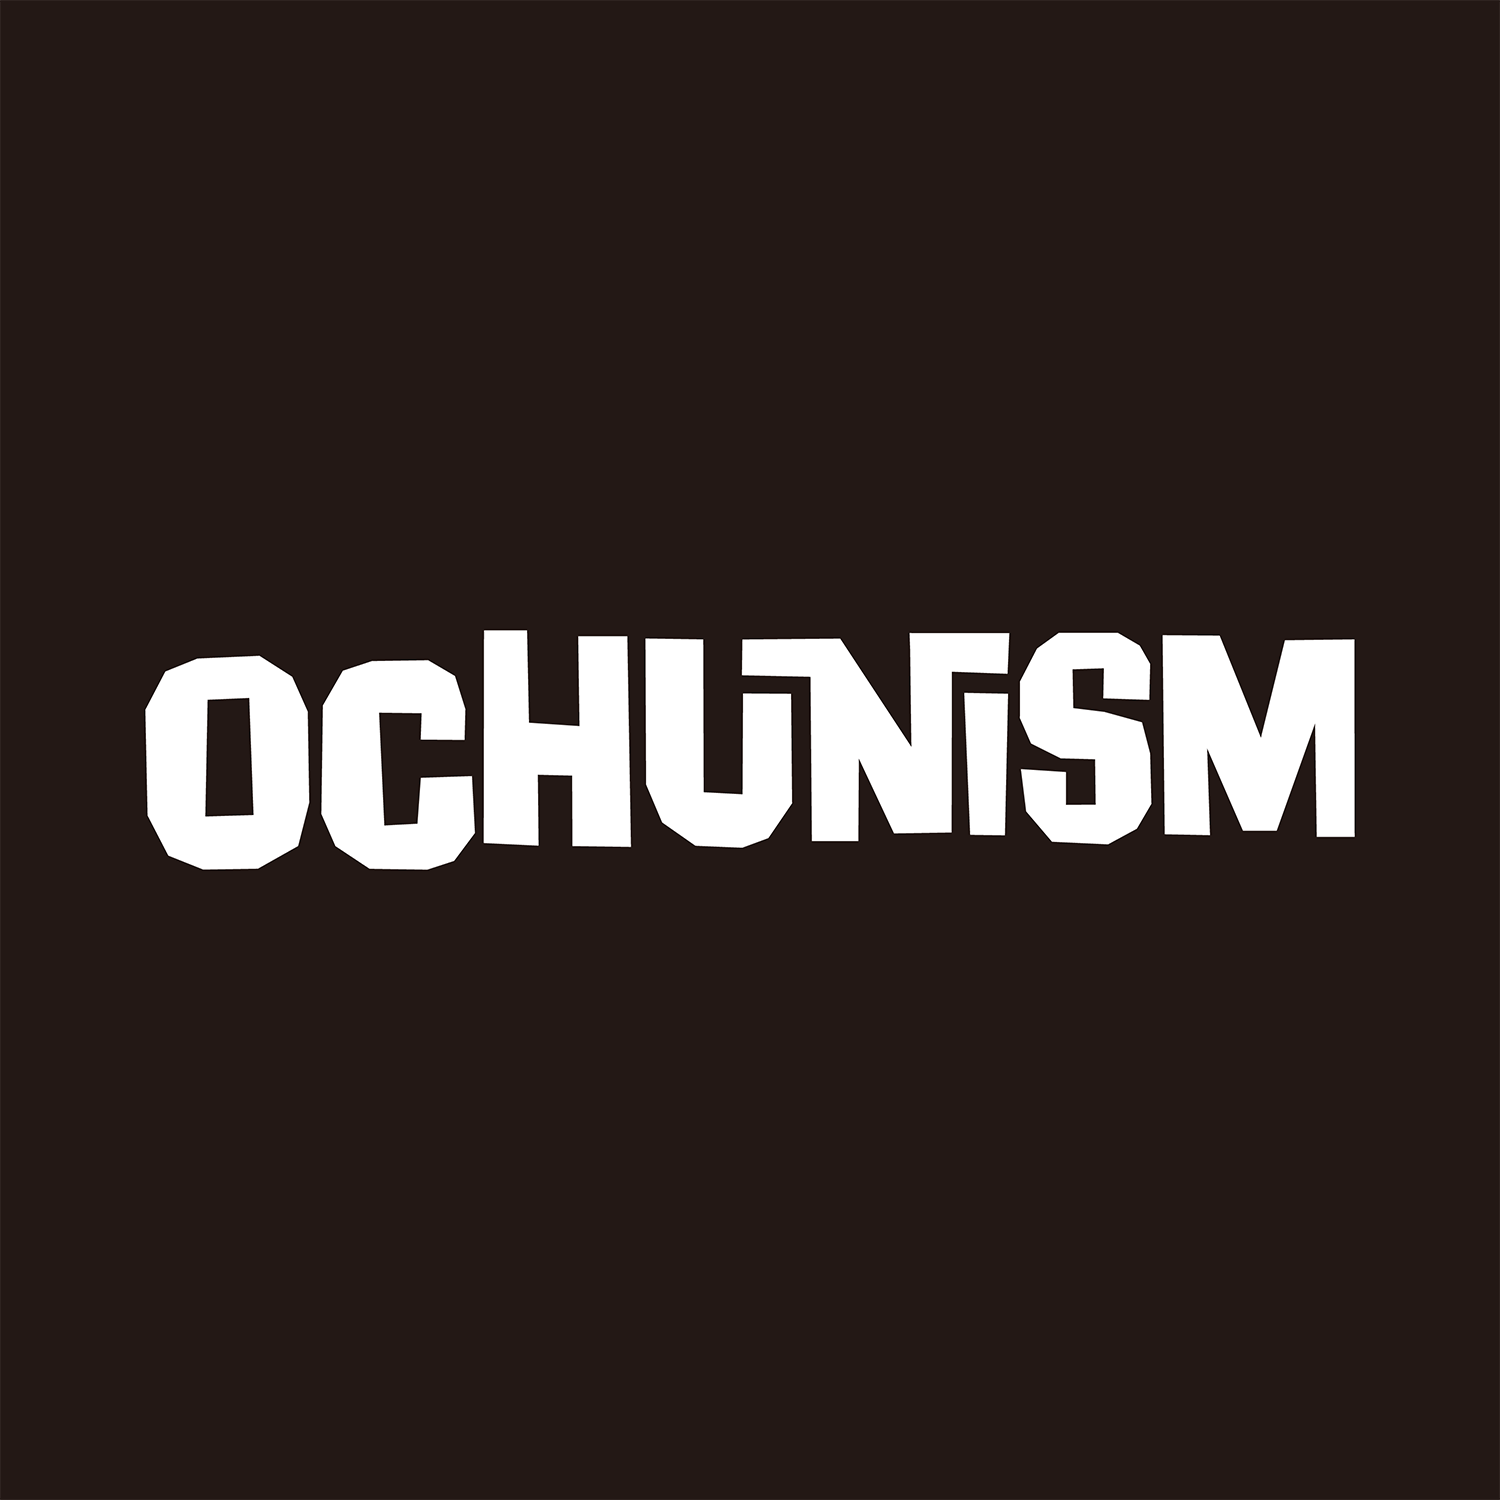 Ochunism